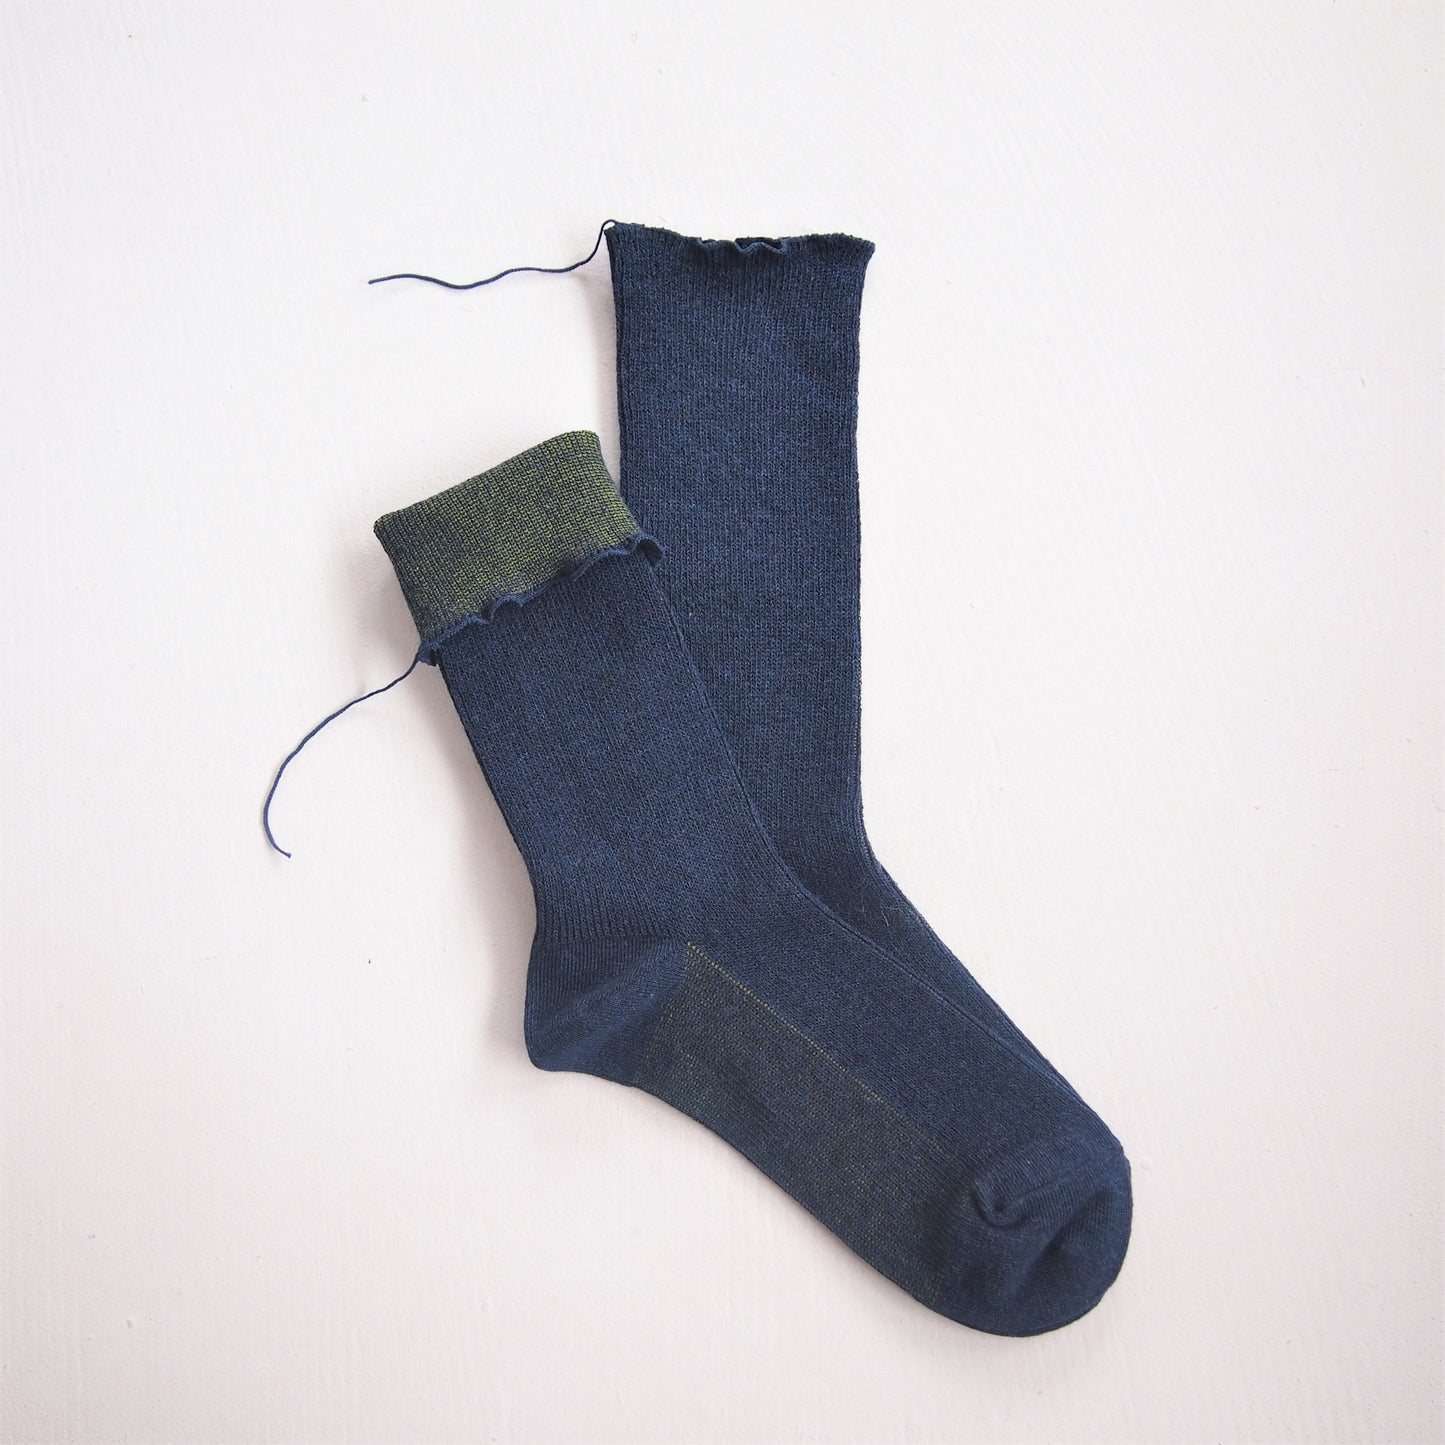 himukashi　organic cotton socks - Indigo denim